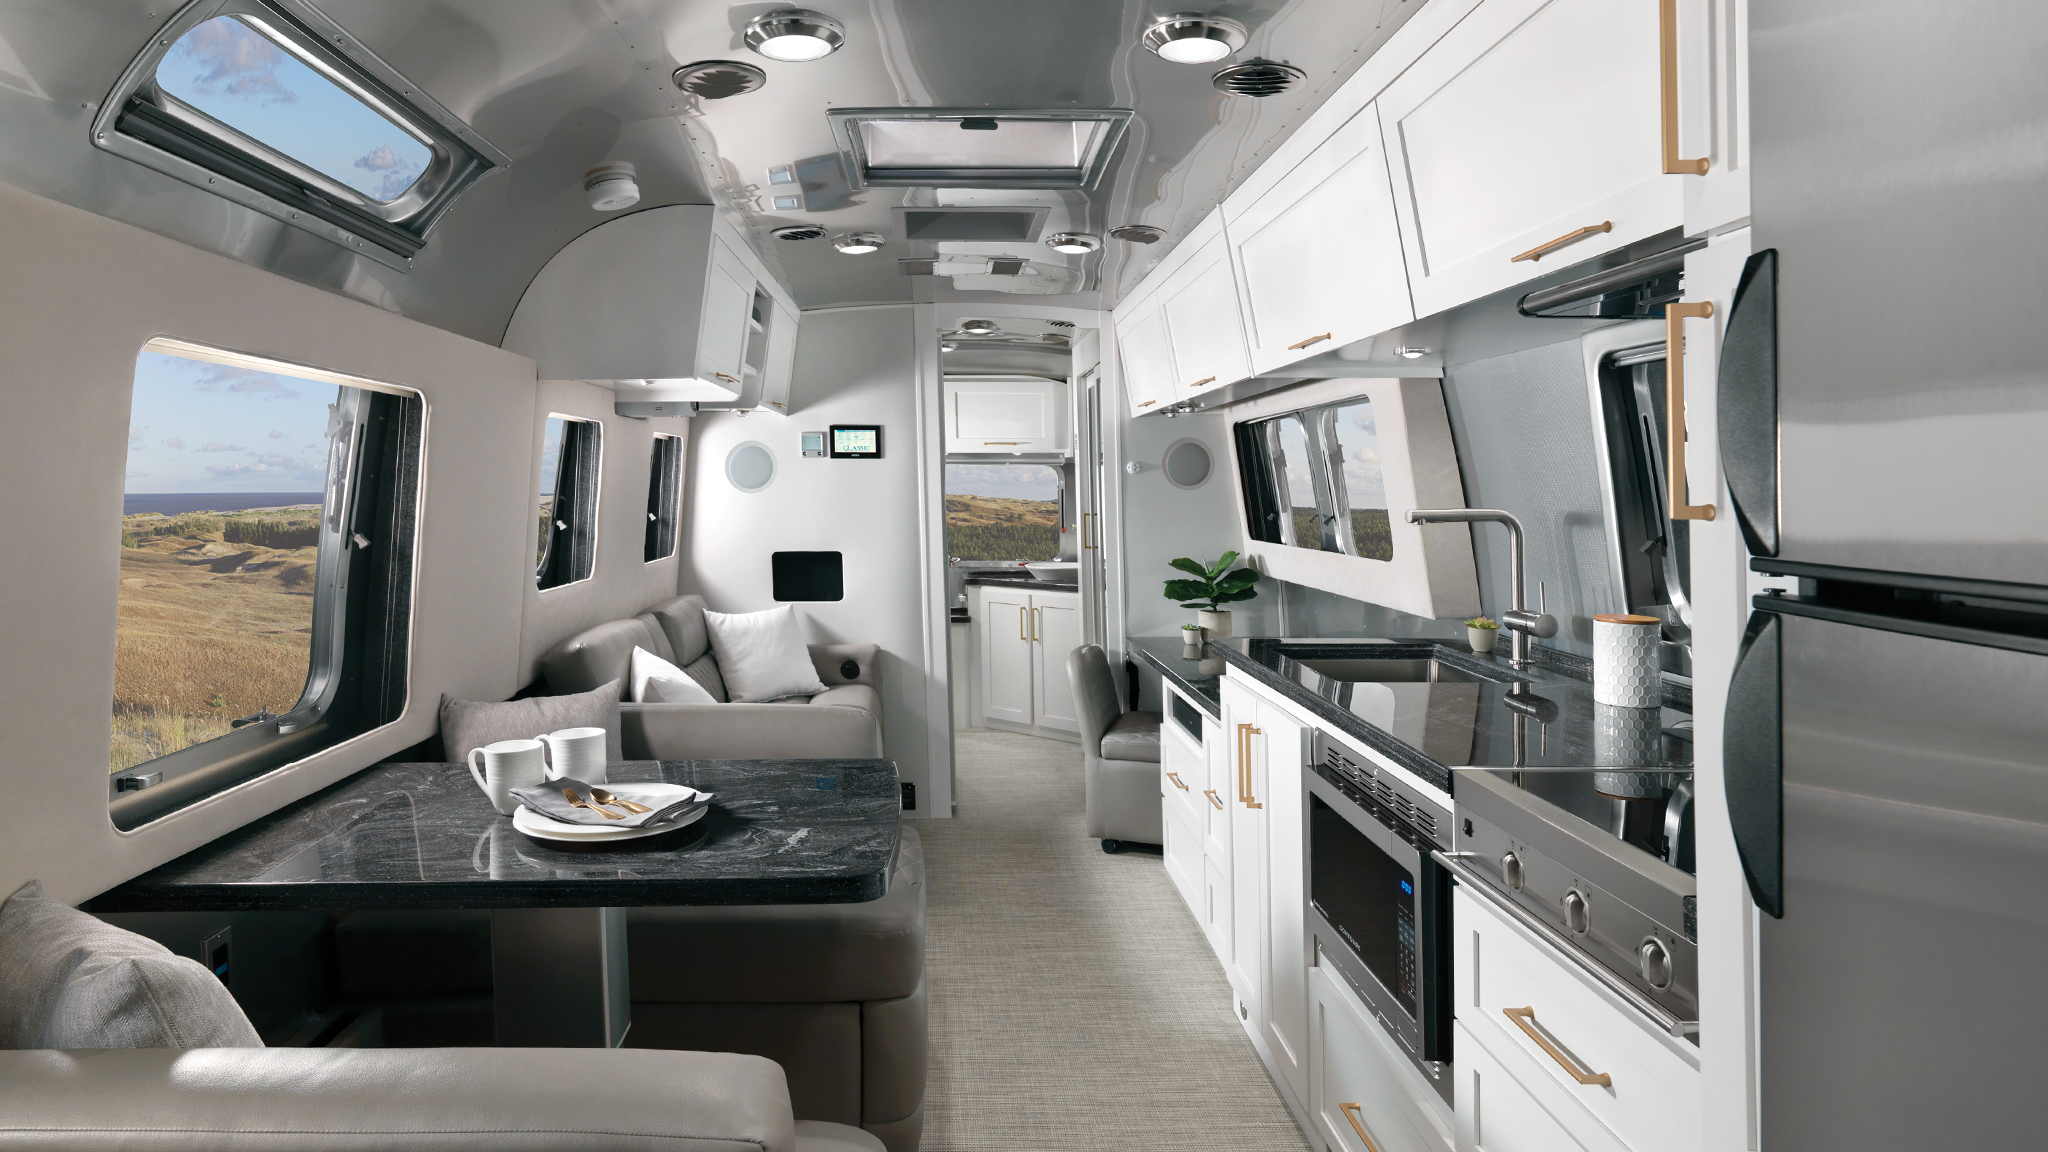 Airstream Classic 2020 Comfort White Interior Decor Desktop Feature ?fit=crop